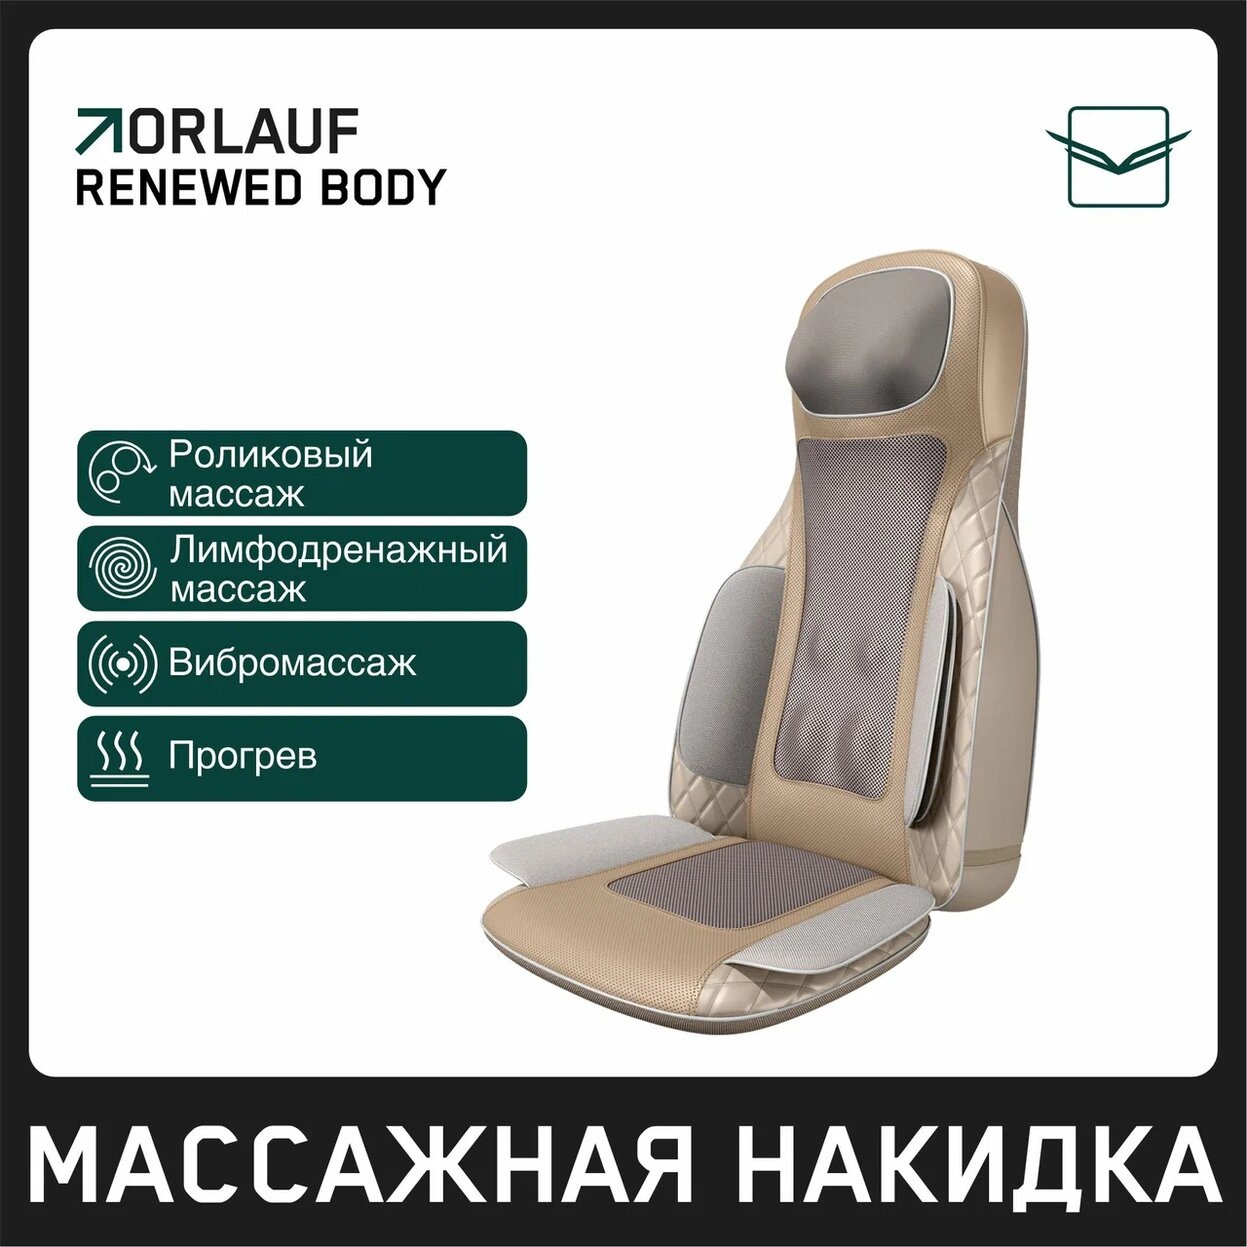 Renewed Body в СПб по цене 39900 ₽ в категории массажные накидки Orlauf